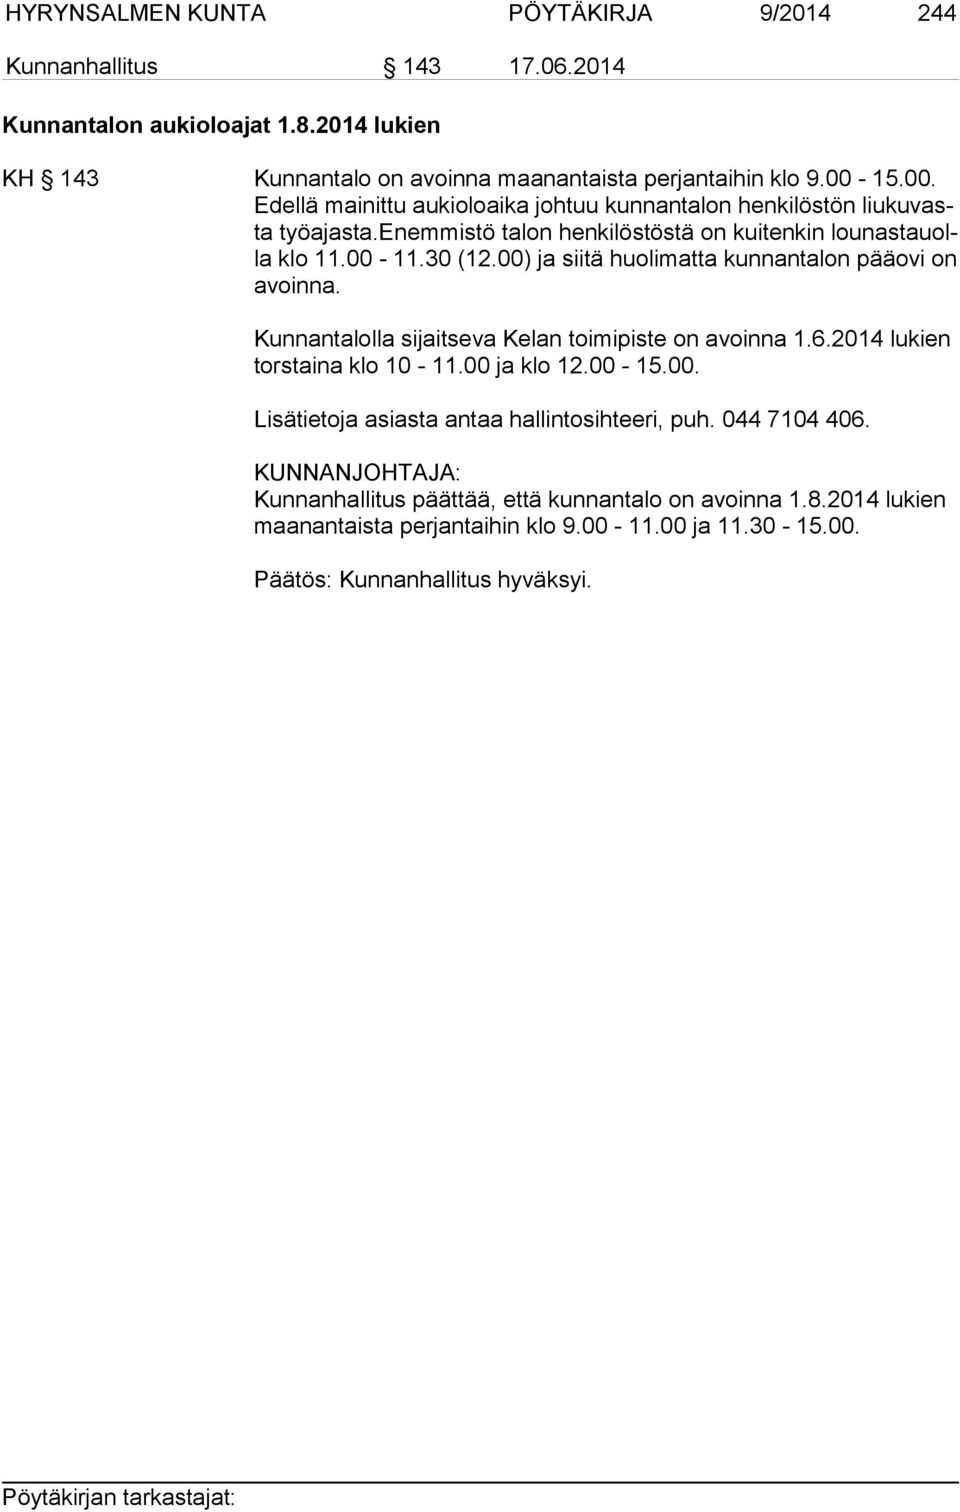 00) ja siitä huolimatta kunnantalon pääovi on avoin na. Kunnantalolla sijaitseva Kelan toimipiste on avoinna 1.6.2014 lukien torstaina klo 10-11.00 ja klo 12.00-15.00. Lisätietoja asiasta antaa hallintosihteeri, puh.